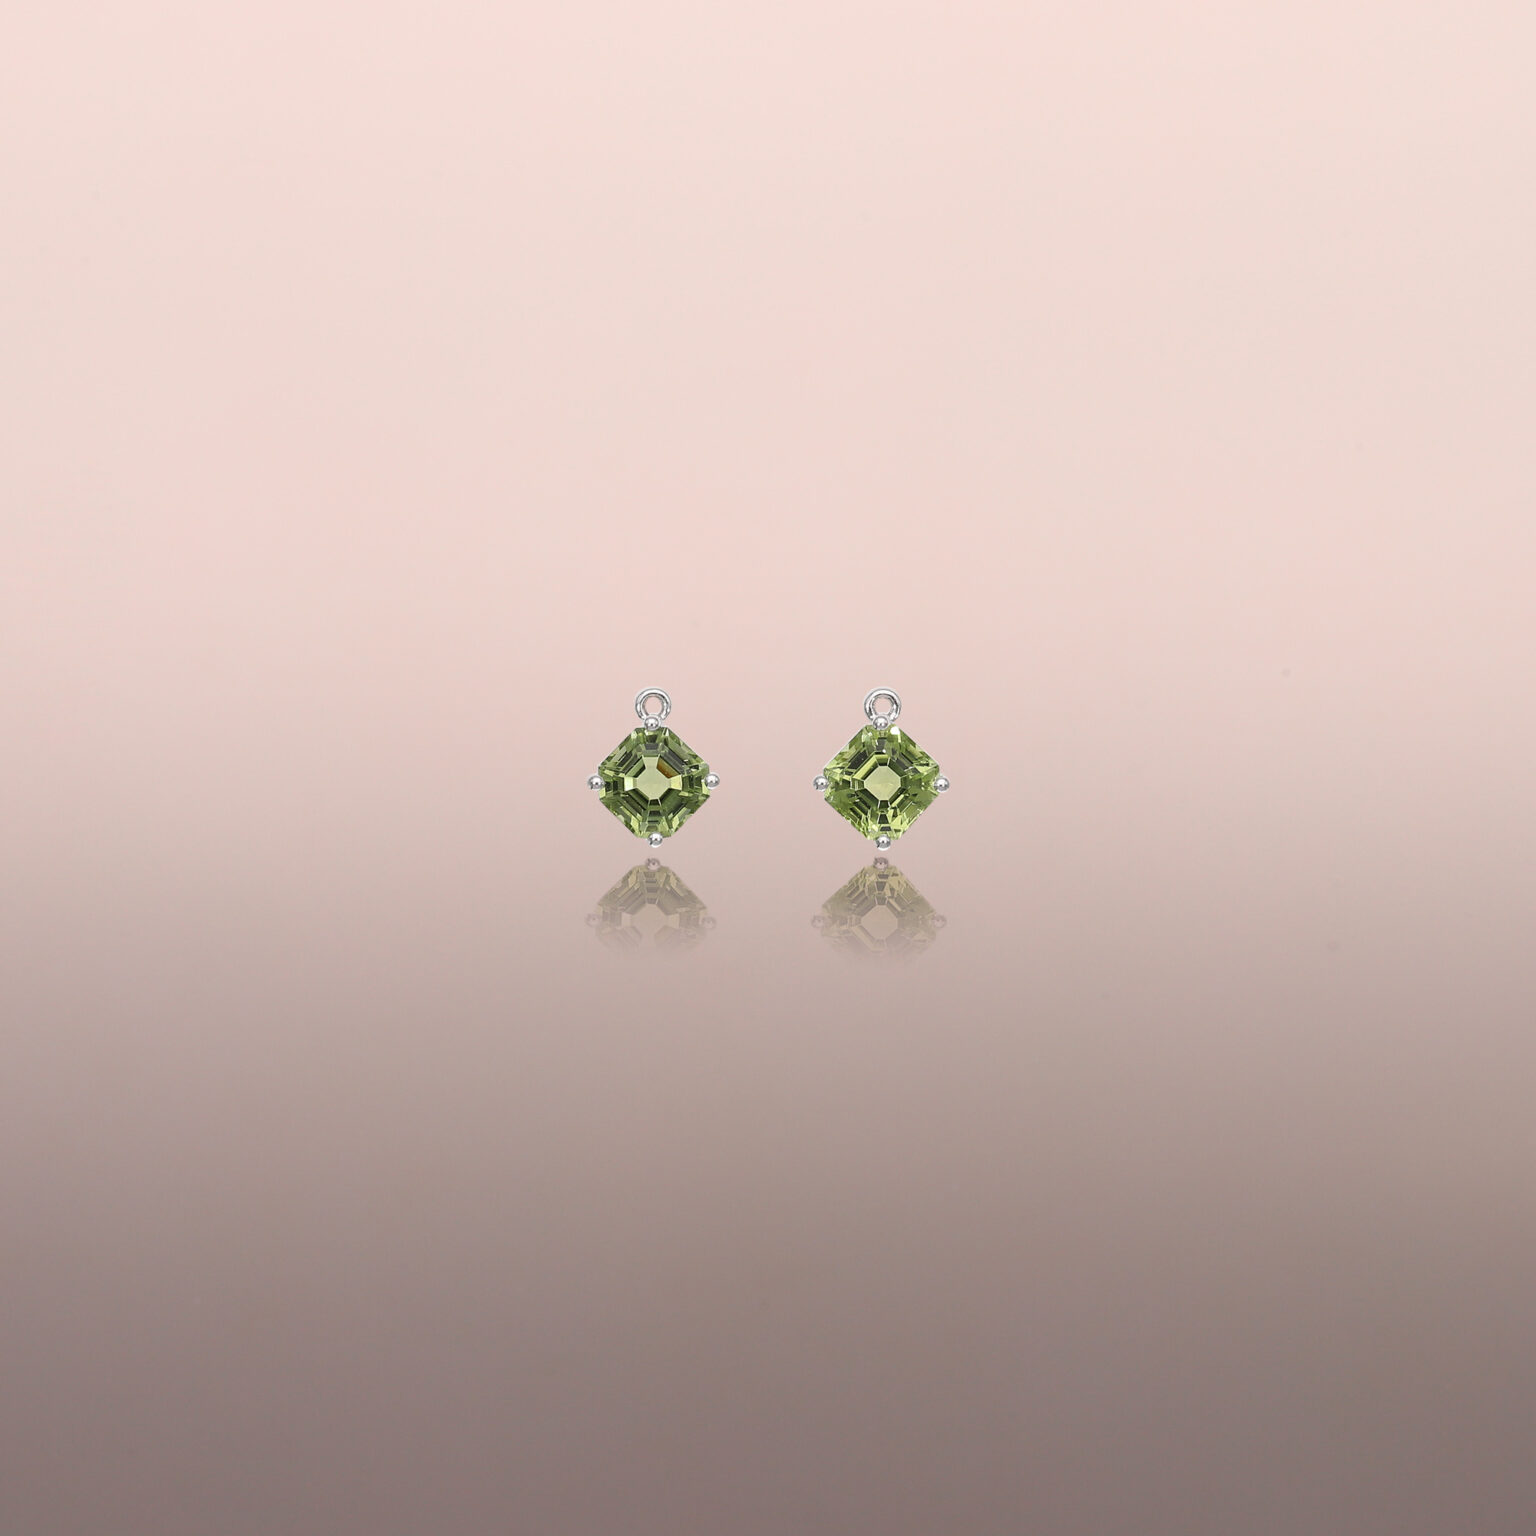 Green Tourmaline Earring Drops